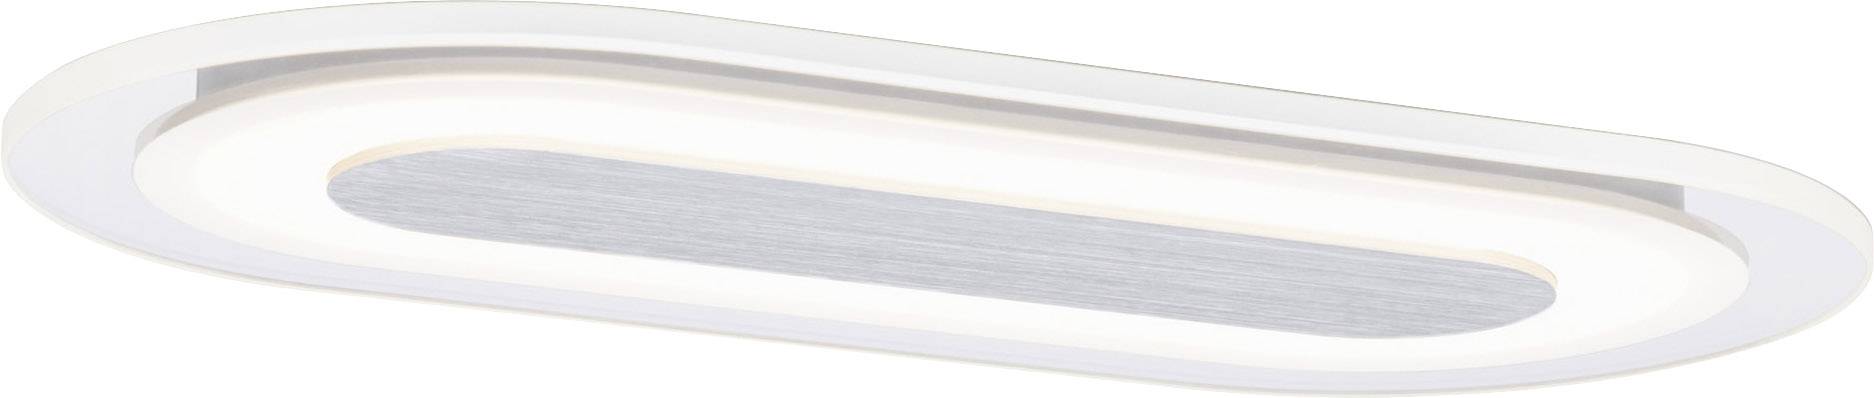 PAULMANN Whirl 92908 LED-Einbauleuchte 8 W Warm-Weiß Aluminium (gebürstet), Satin